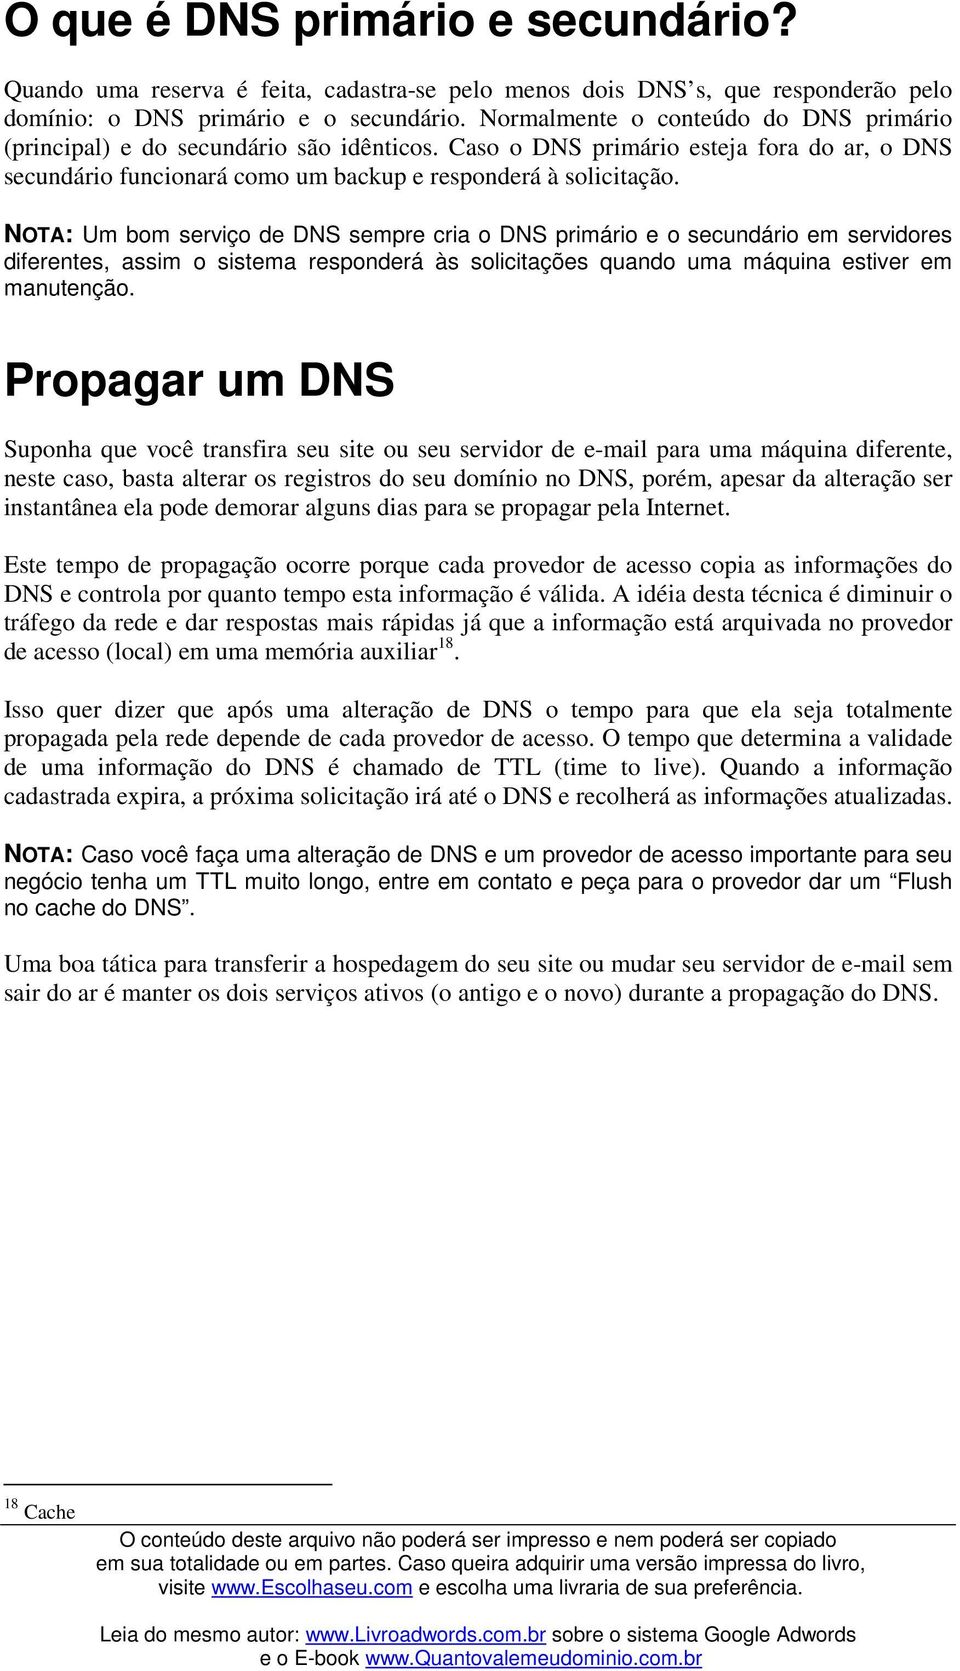 NOTA: Um bom serviço de DNS sempre cria o DNS primário e o secundário em servidores diferentes, assim o sistema responderá às solicitações quando uma máquina estiver em manutenção.